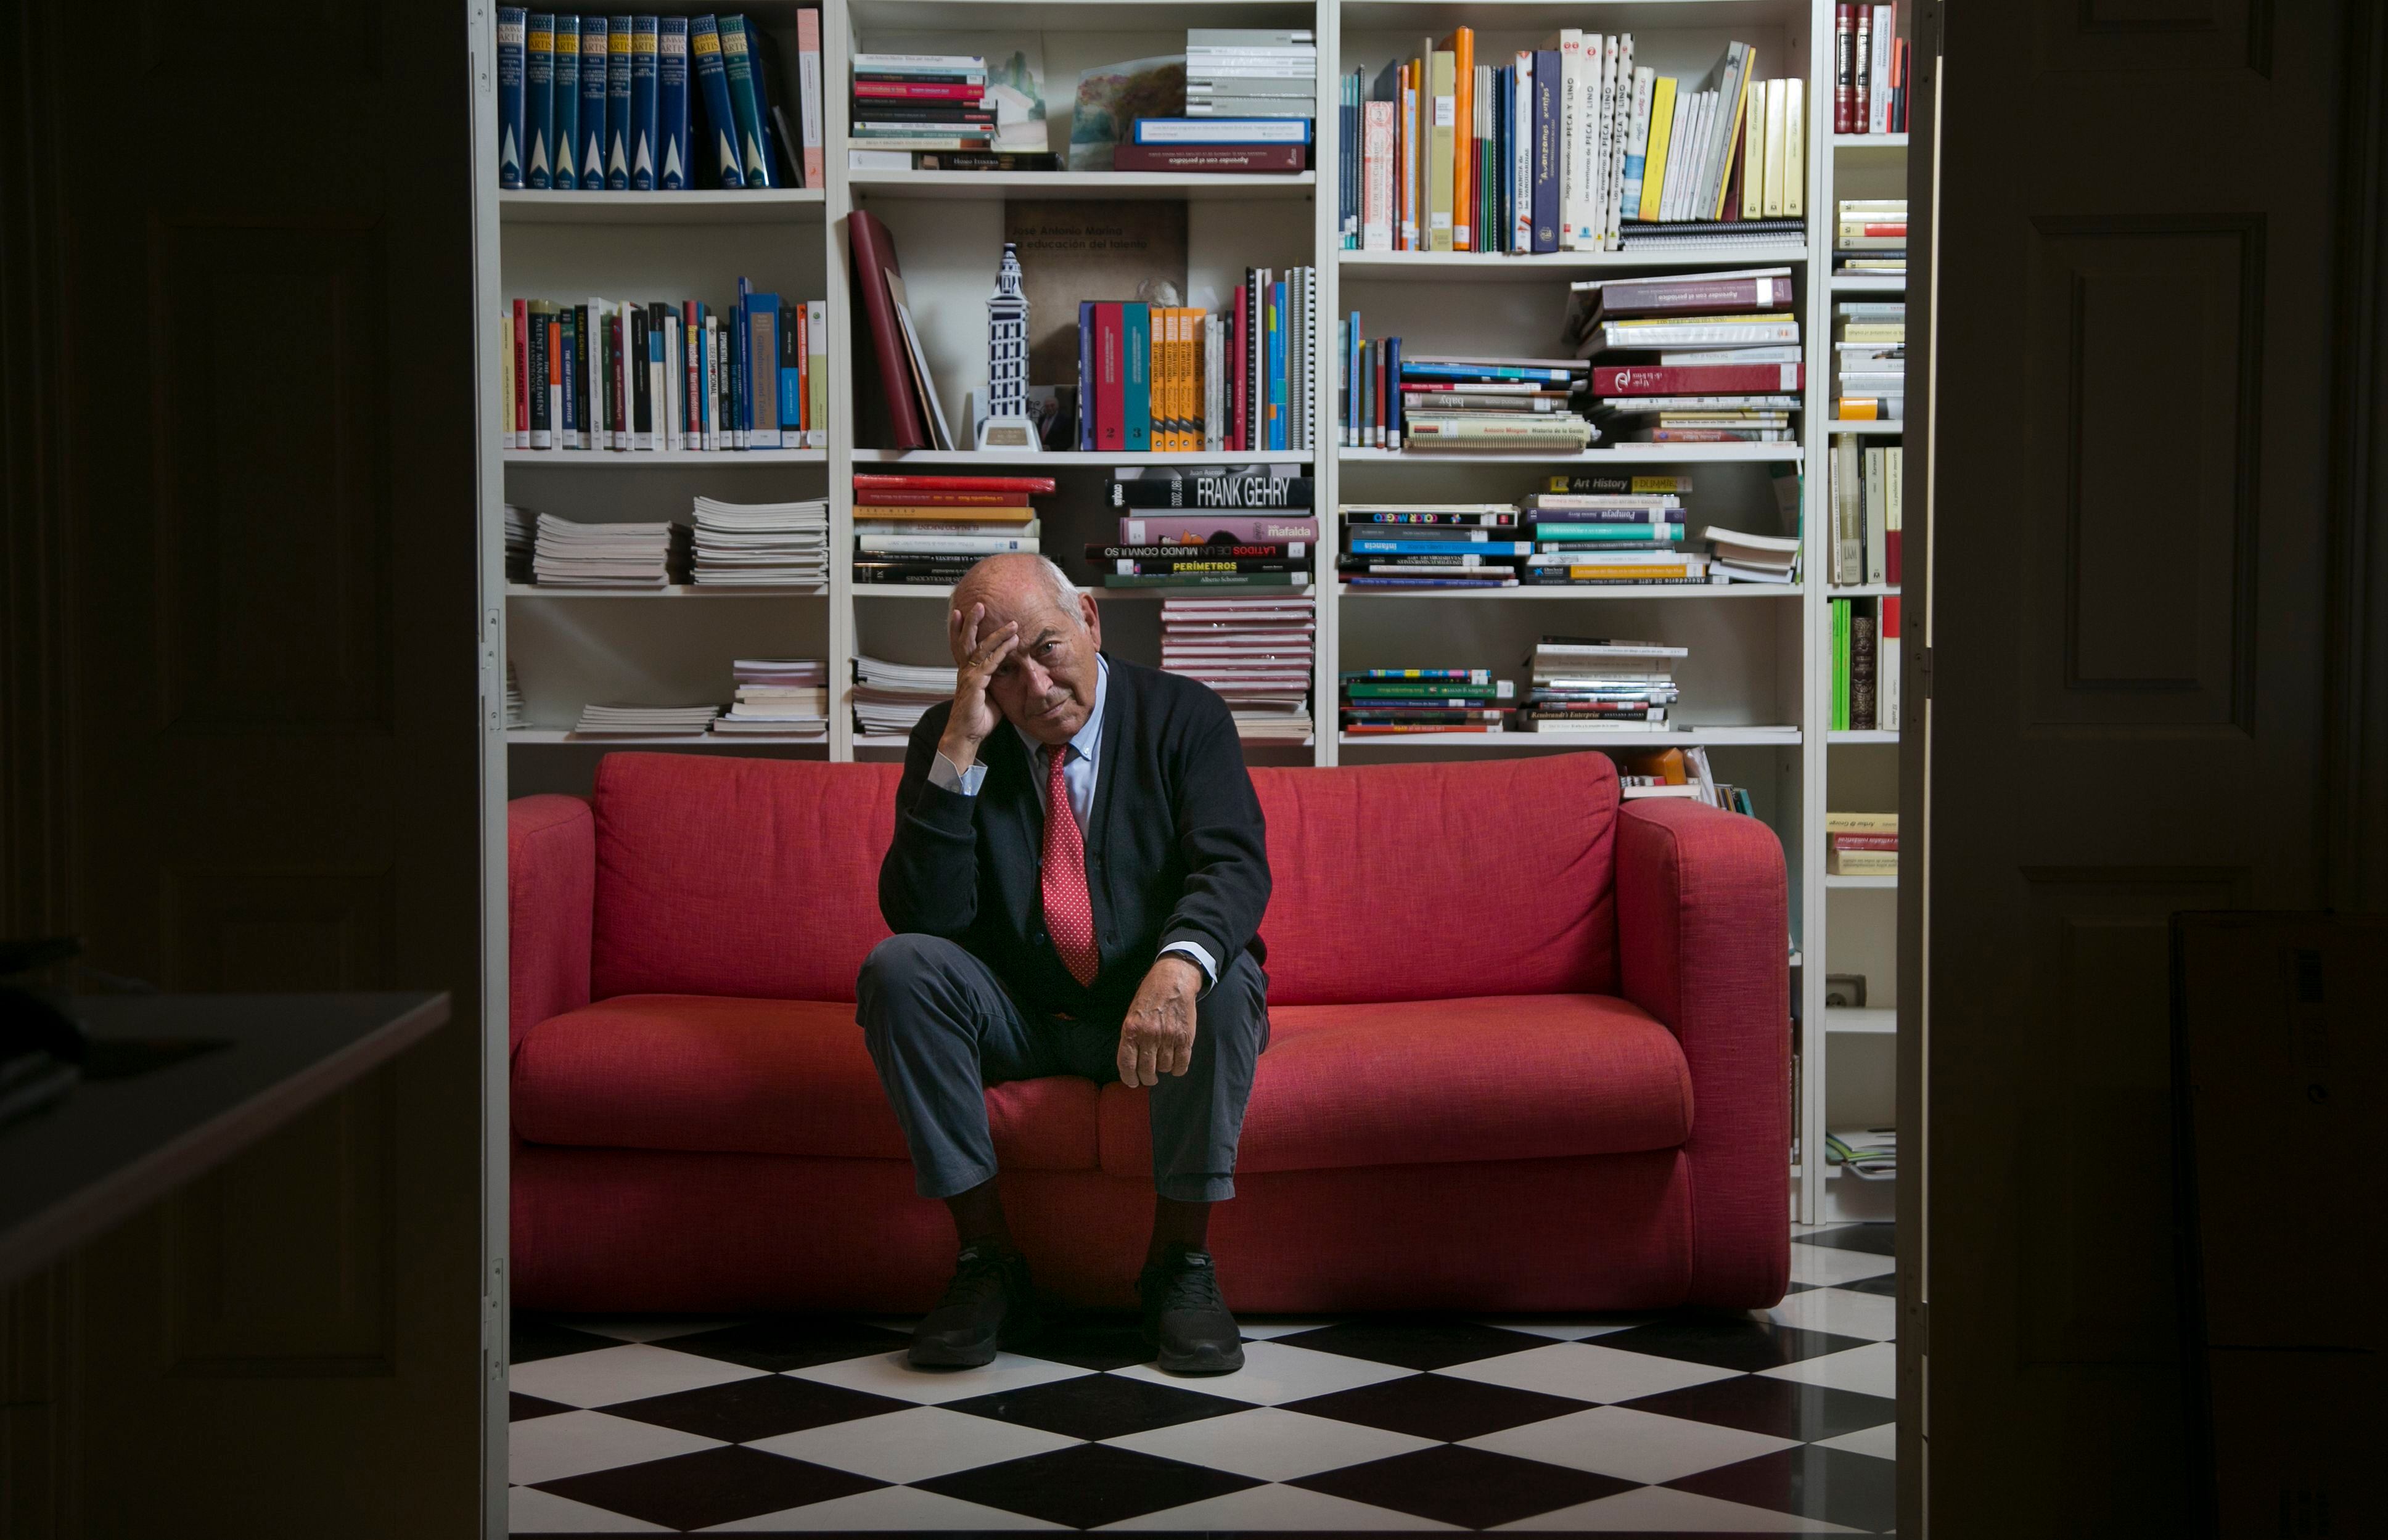 El filósofo, catedrático y escritor toledano, fotografiado en Madrid.